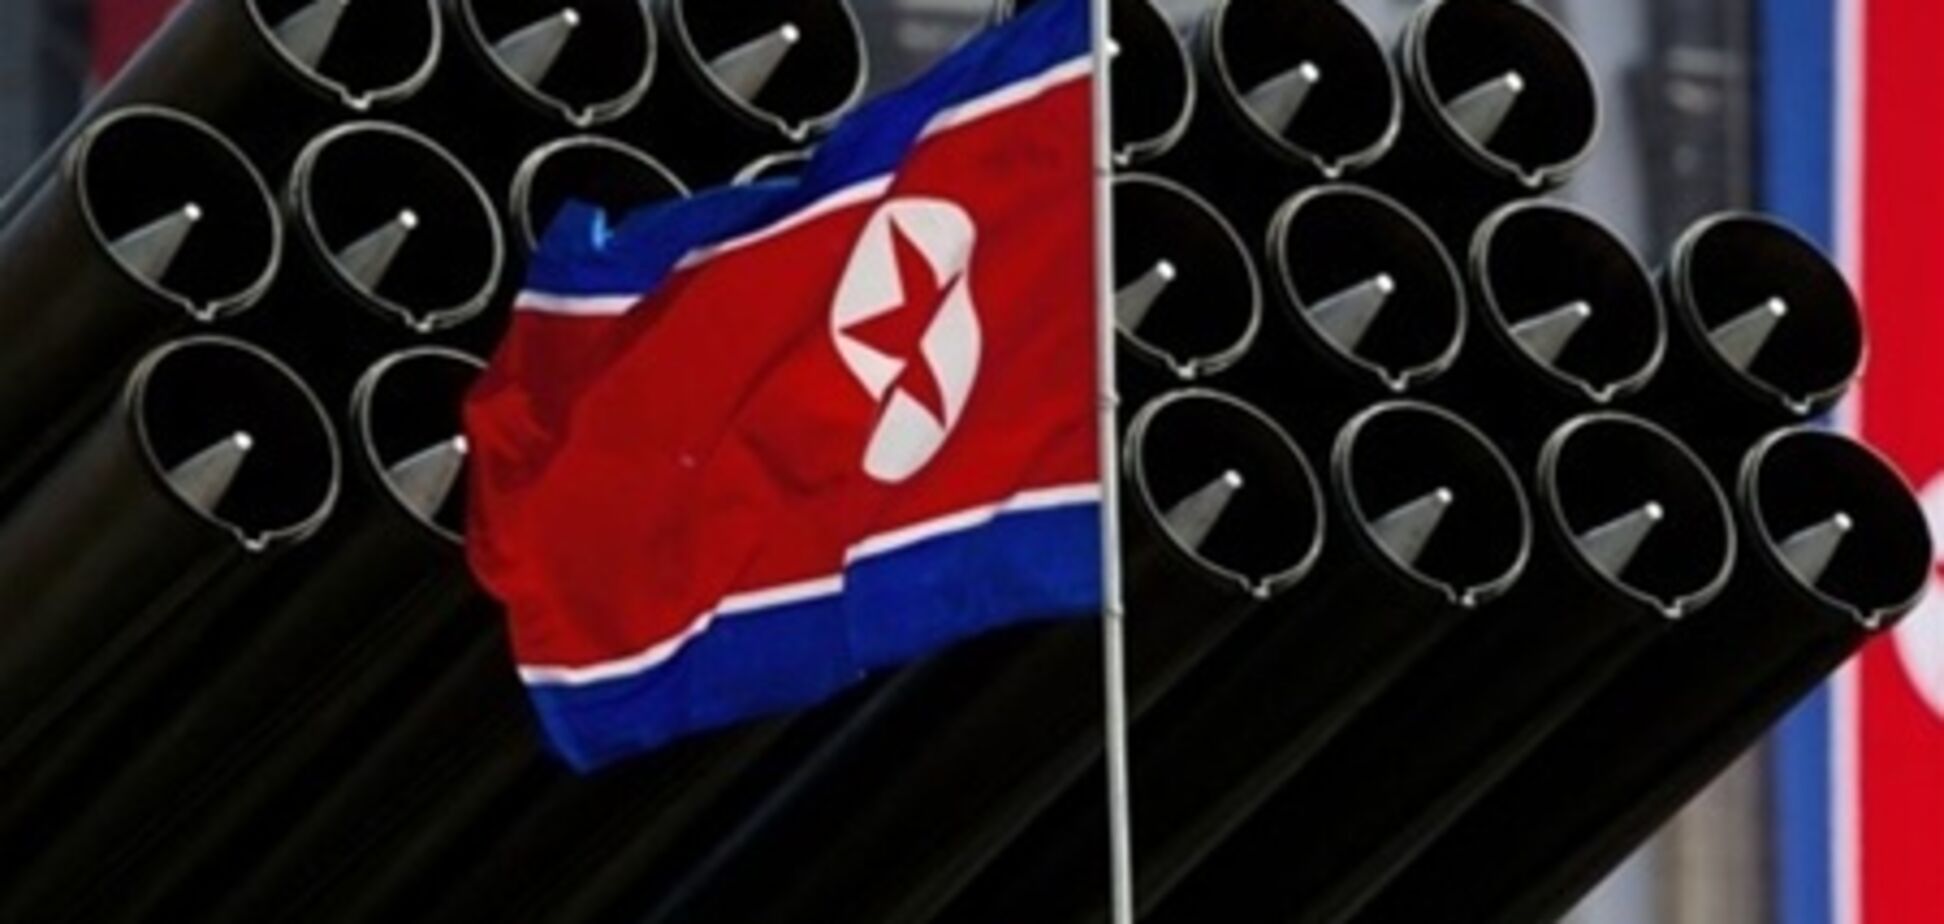 КНДР готова обсудить урегулирование ситуации на Корейском полуострове